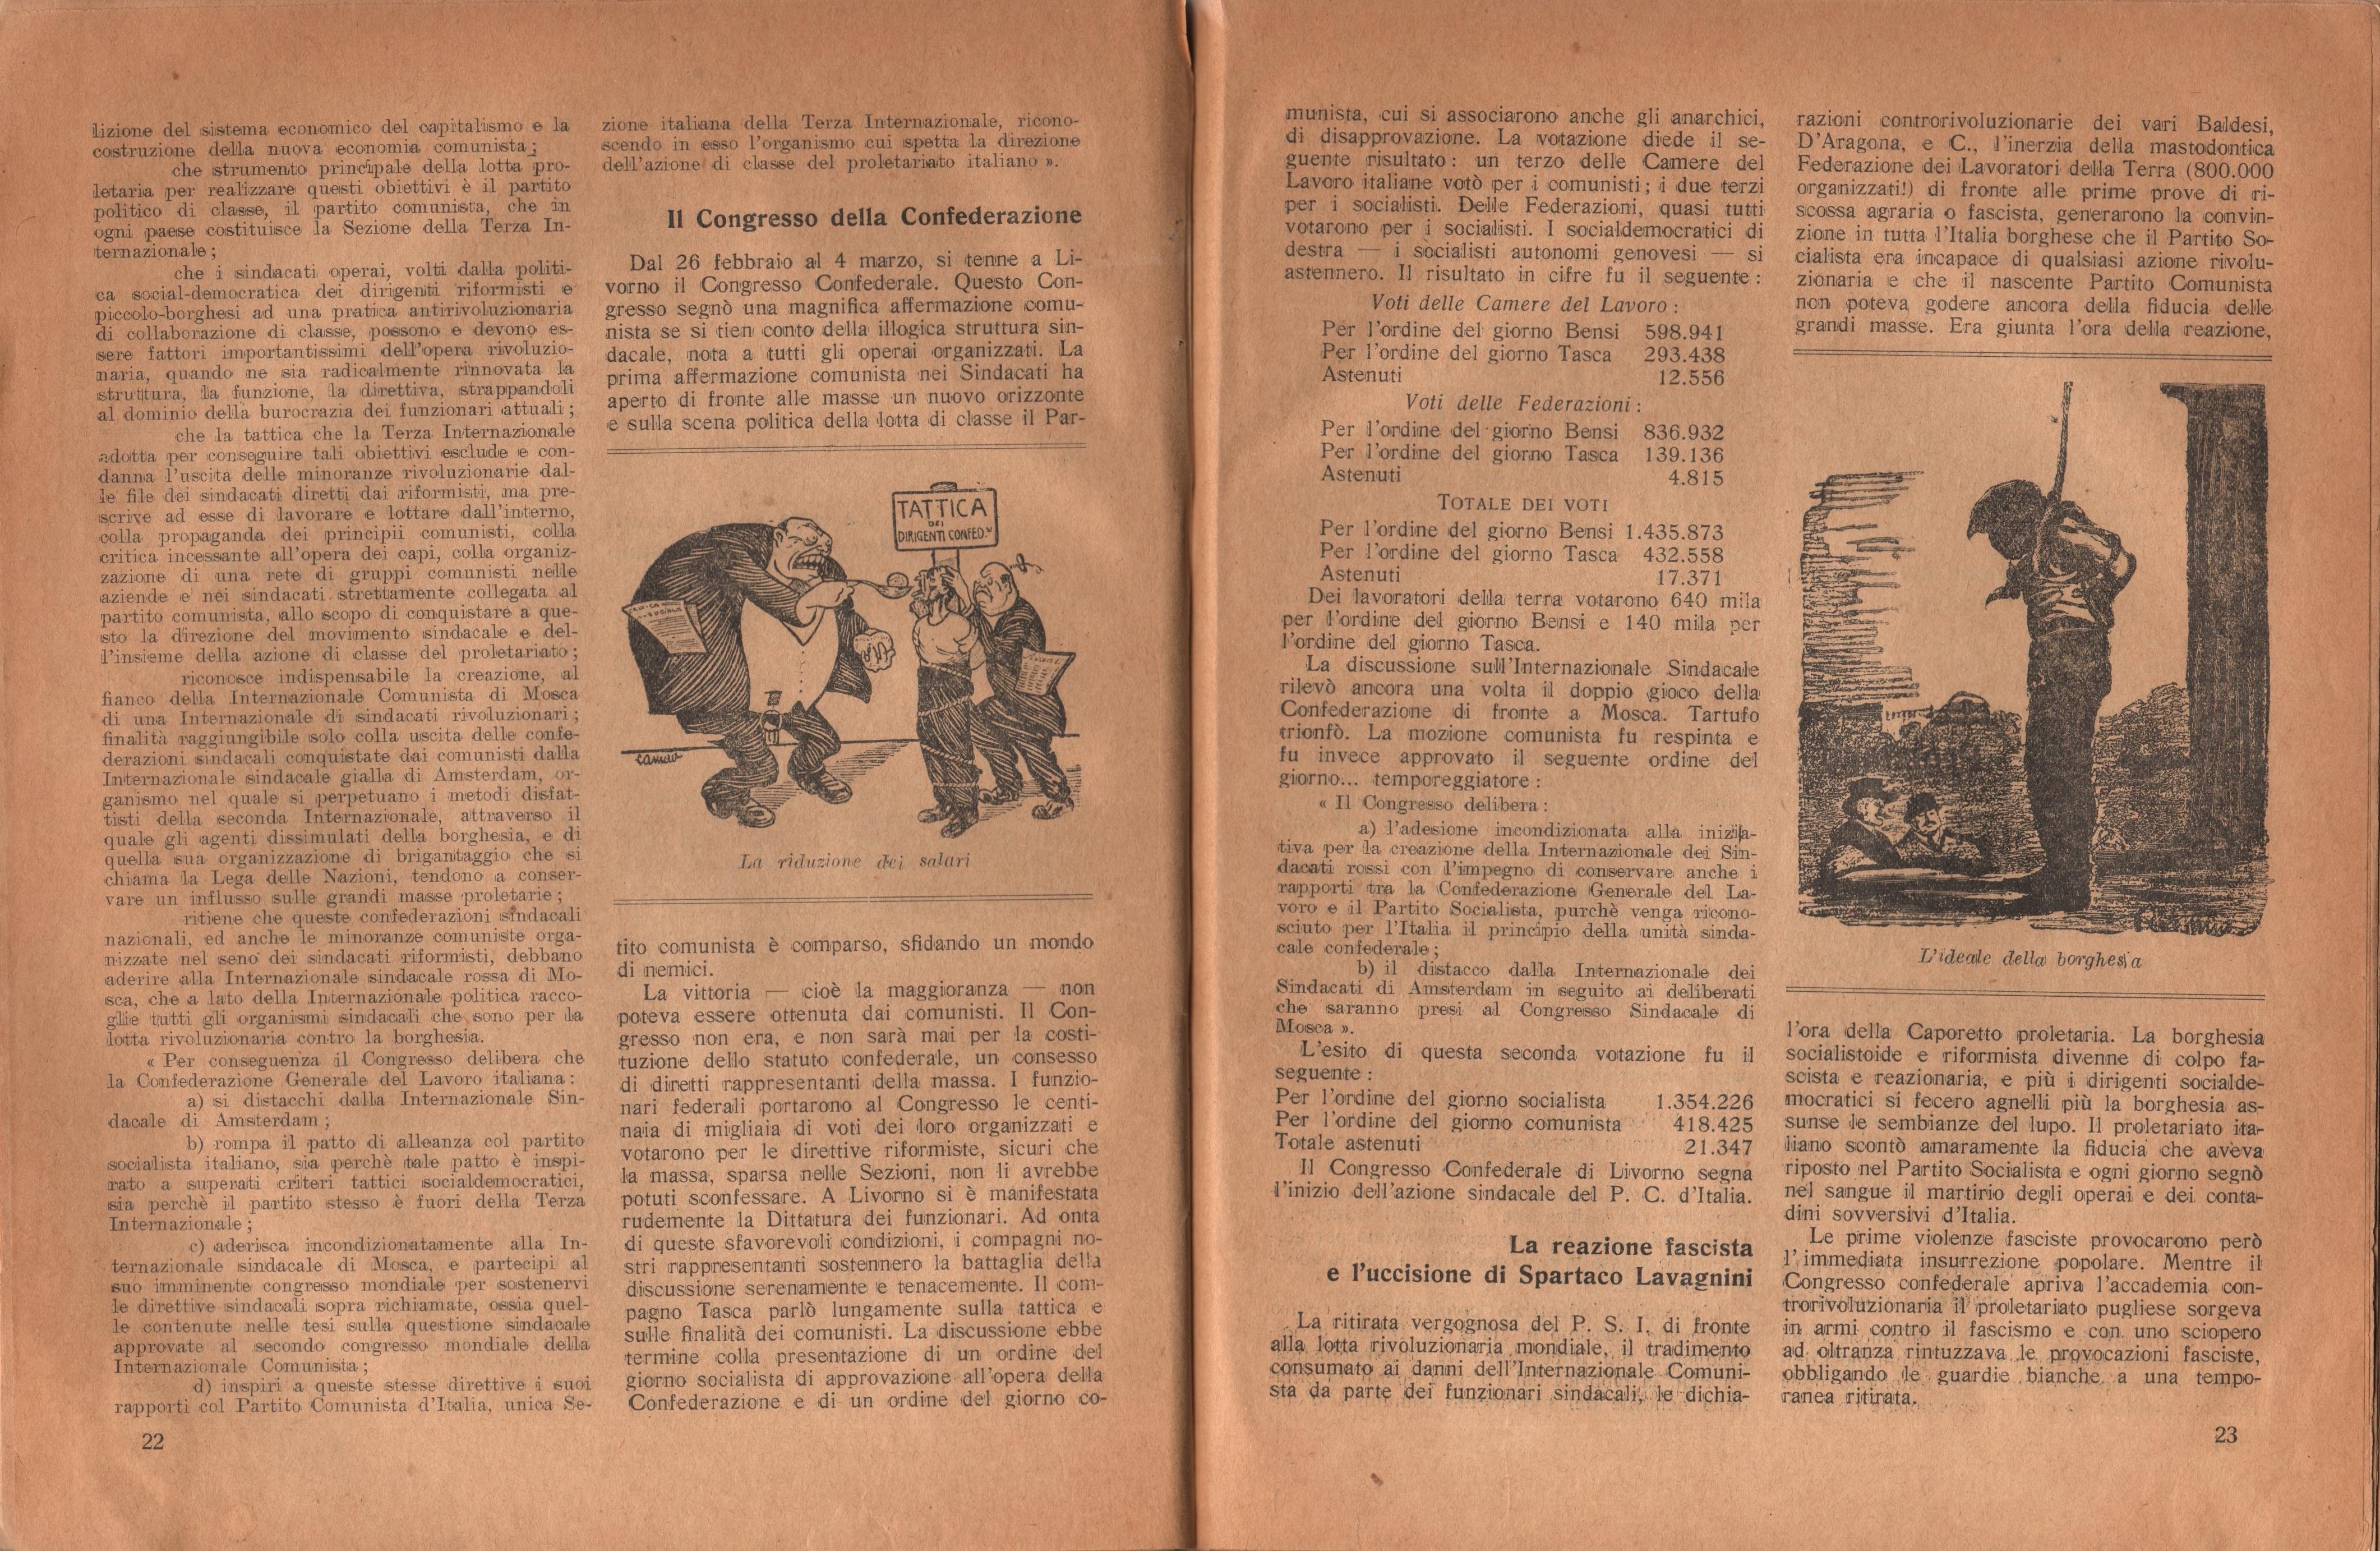  Almanacco comunista 1922 - pag. 14